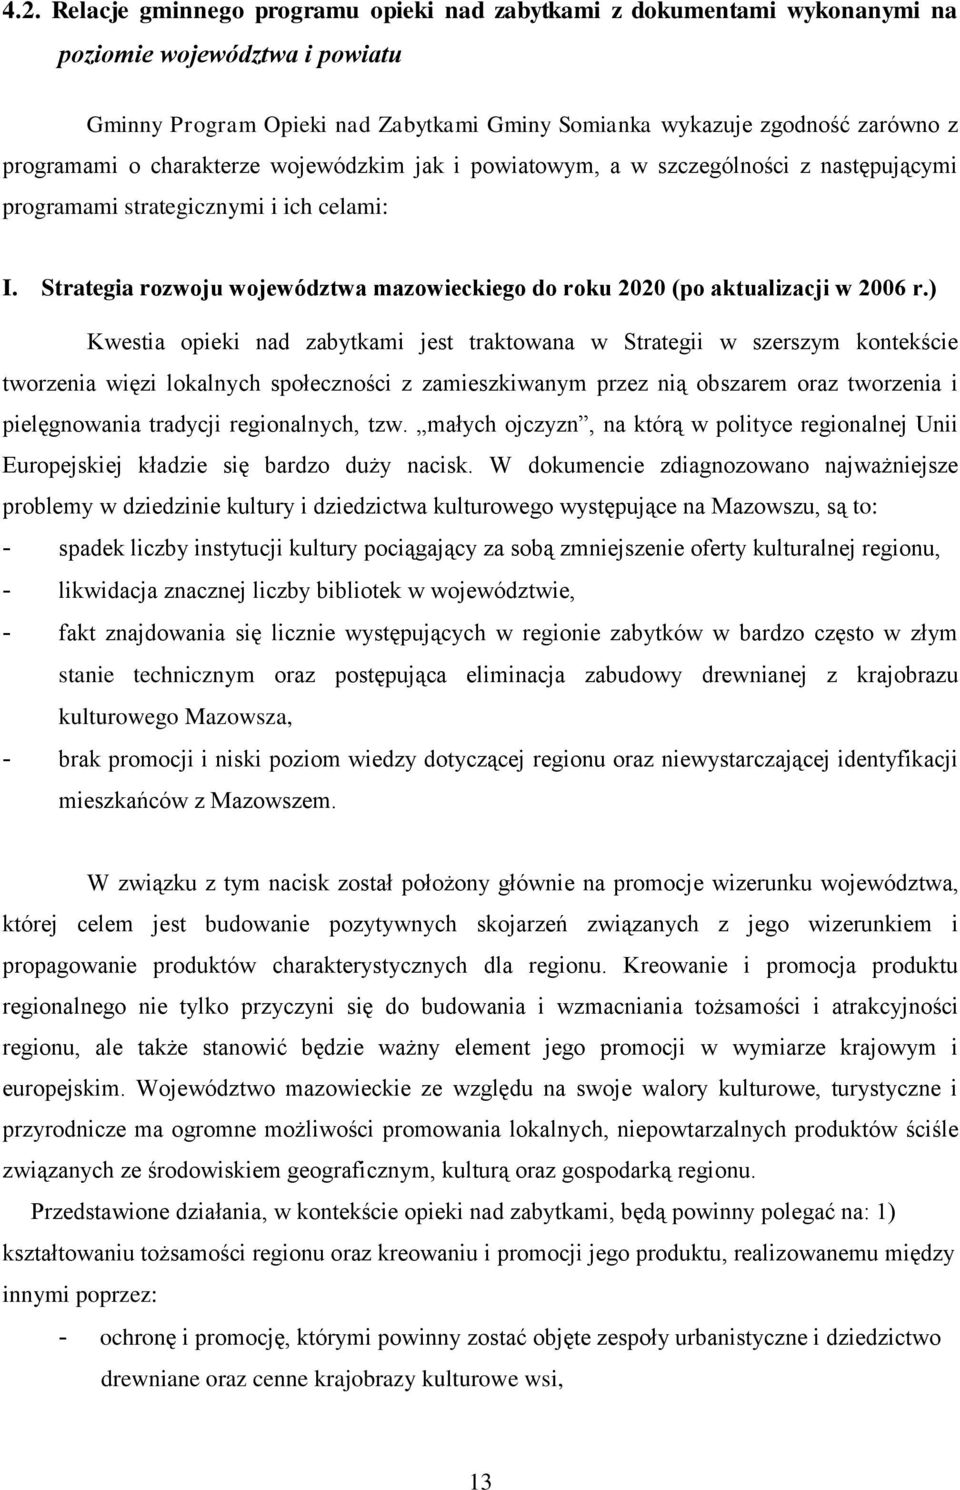 Strategia rozwoju województwa mazowieckiego do roku 2020 (po aktualizacji w 2006 r.